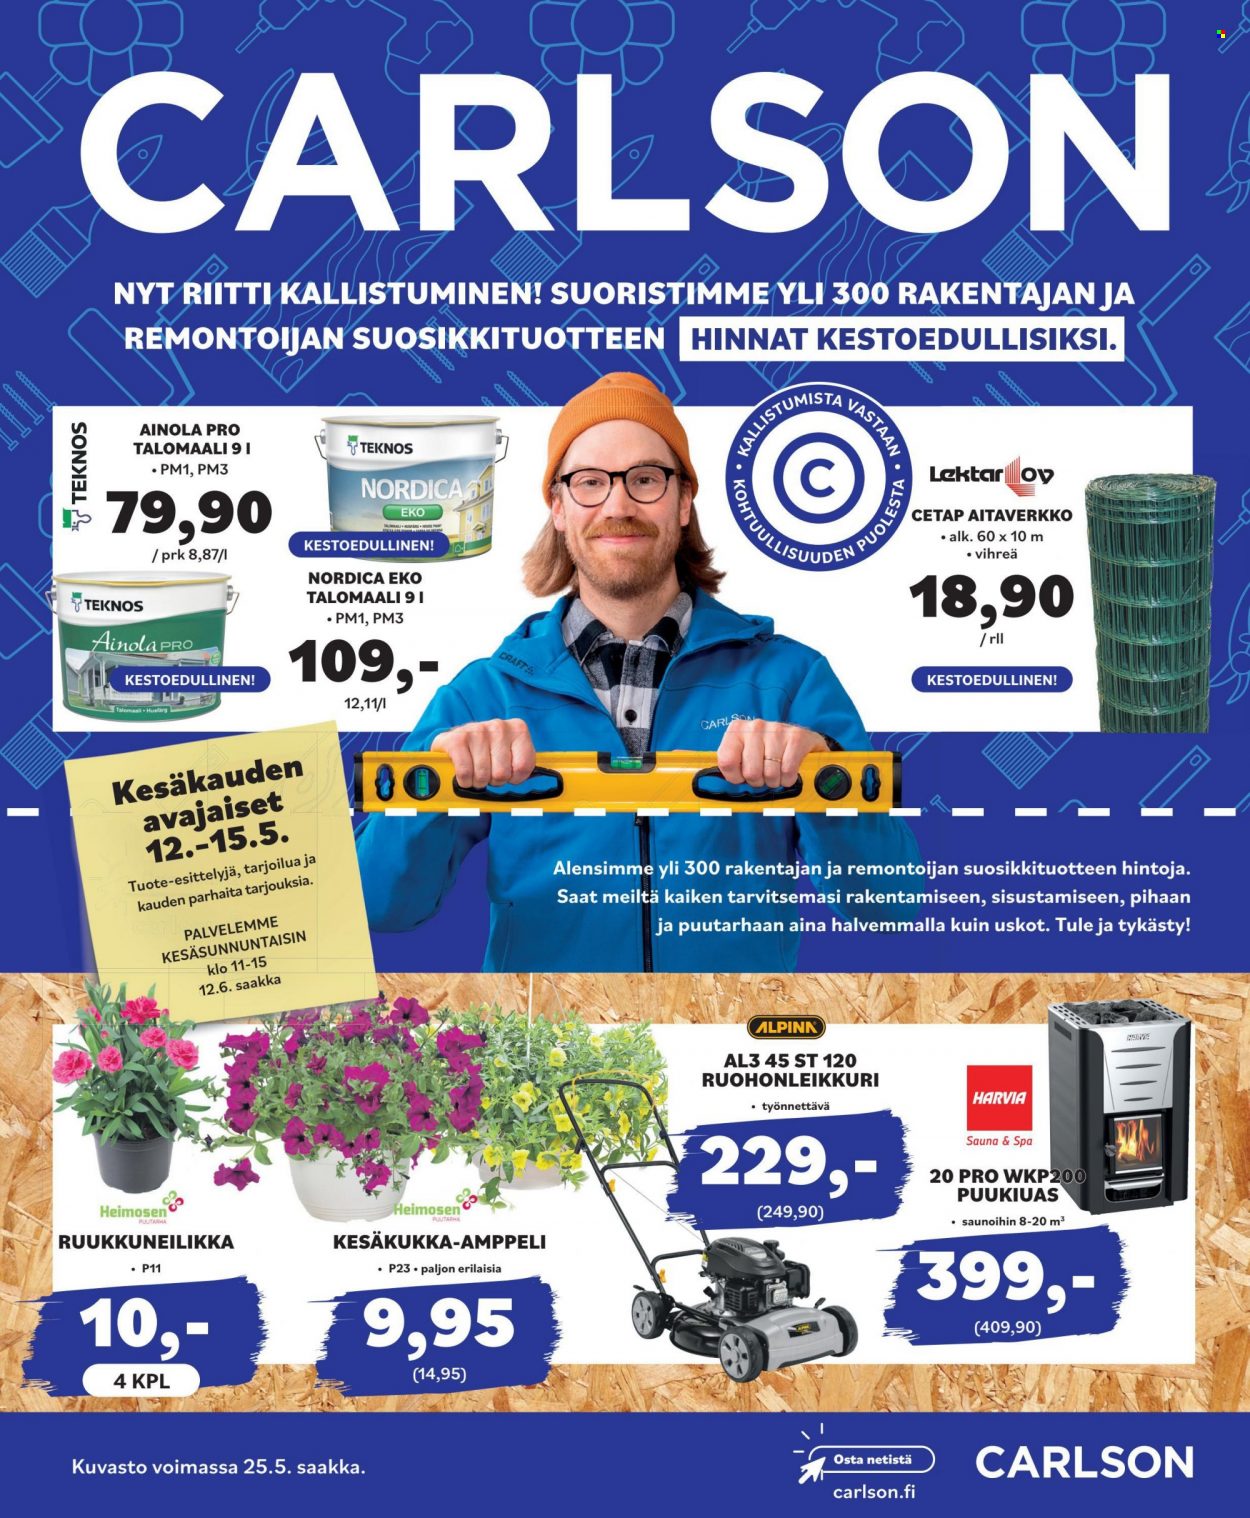 thumbnail - Carlson tarjoukset  - 10.05.2022 - 25.05.2022 - Tarjoustuotteet - Craft, Teknos, puukiuas. Sivu 1.